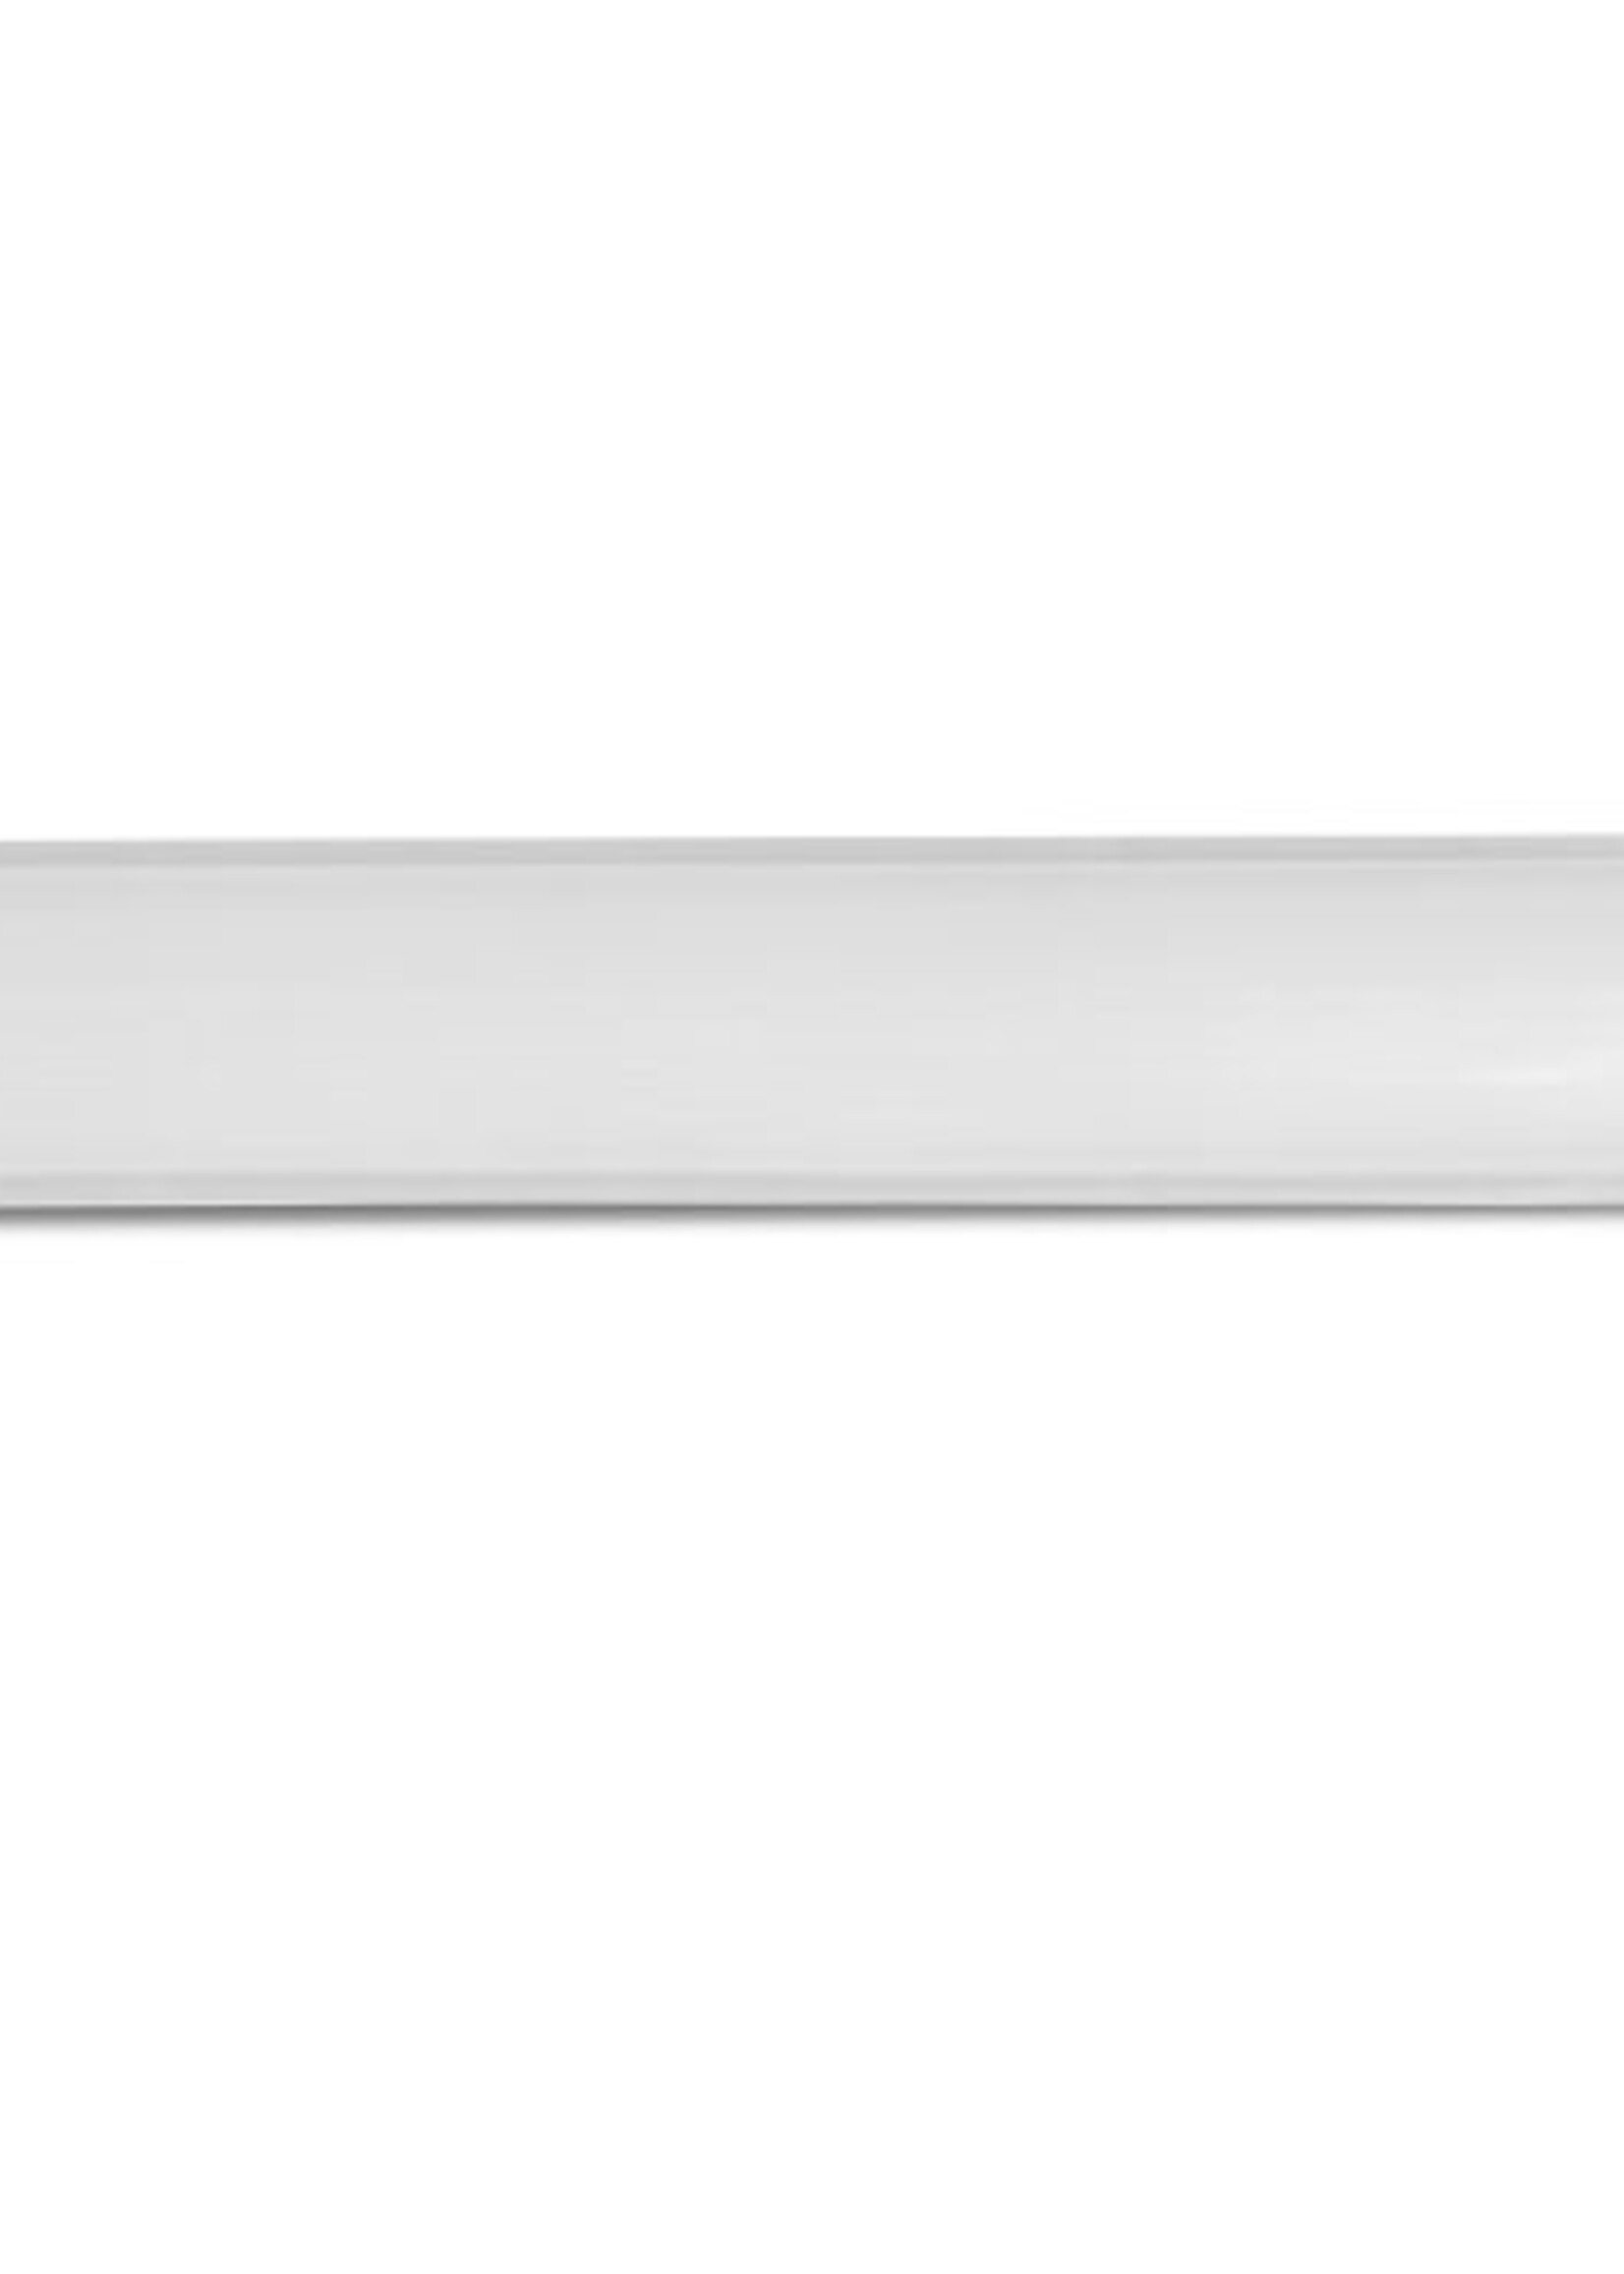 LEDWINKEL-Online LED TL IP65 waterbestendig 60cm 24W